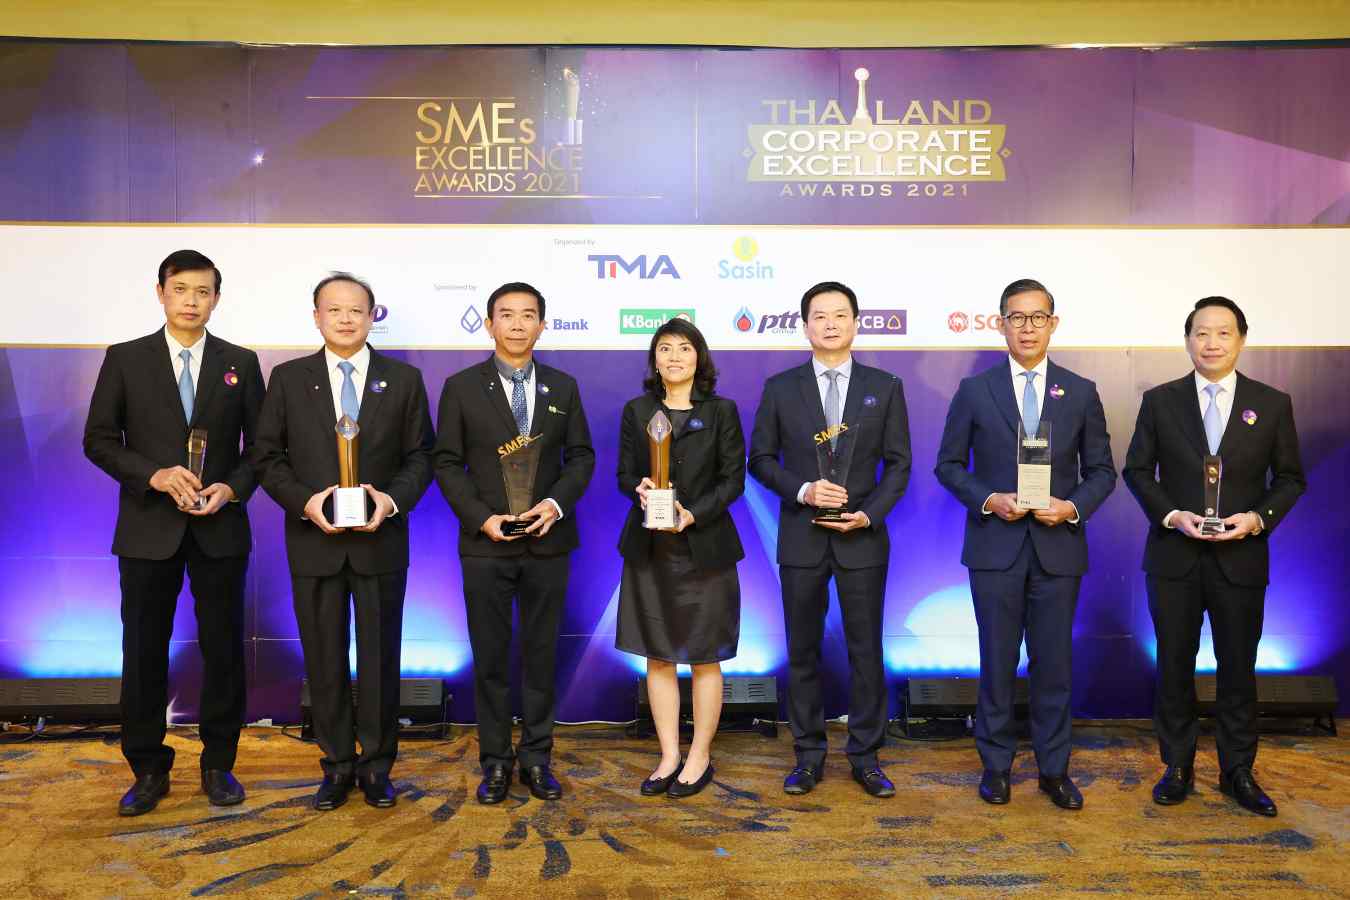 ธนาคารกรุงเทพ รับรางวัลดีเด่นความเป็นเลิศด้านนวัตกรรมฯ ลูกค้าธุรกิจ SME รับ 3 รางวัลบริหารจัดการเป็นเลิศ ในงานประกาศผลรางวัลพระราชทาน Thailand Corporate Excellence Awards 2021 และ SMEs Excellence Awards 2021